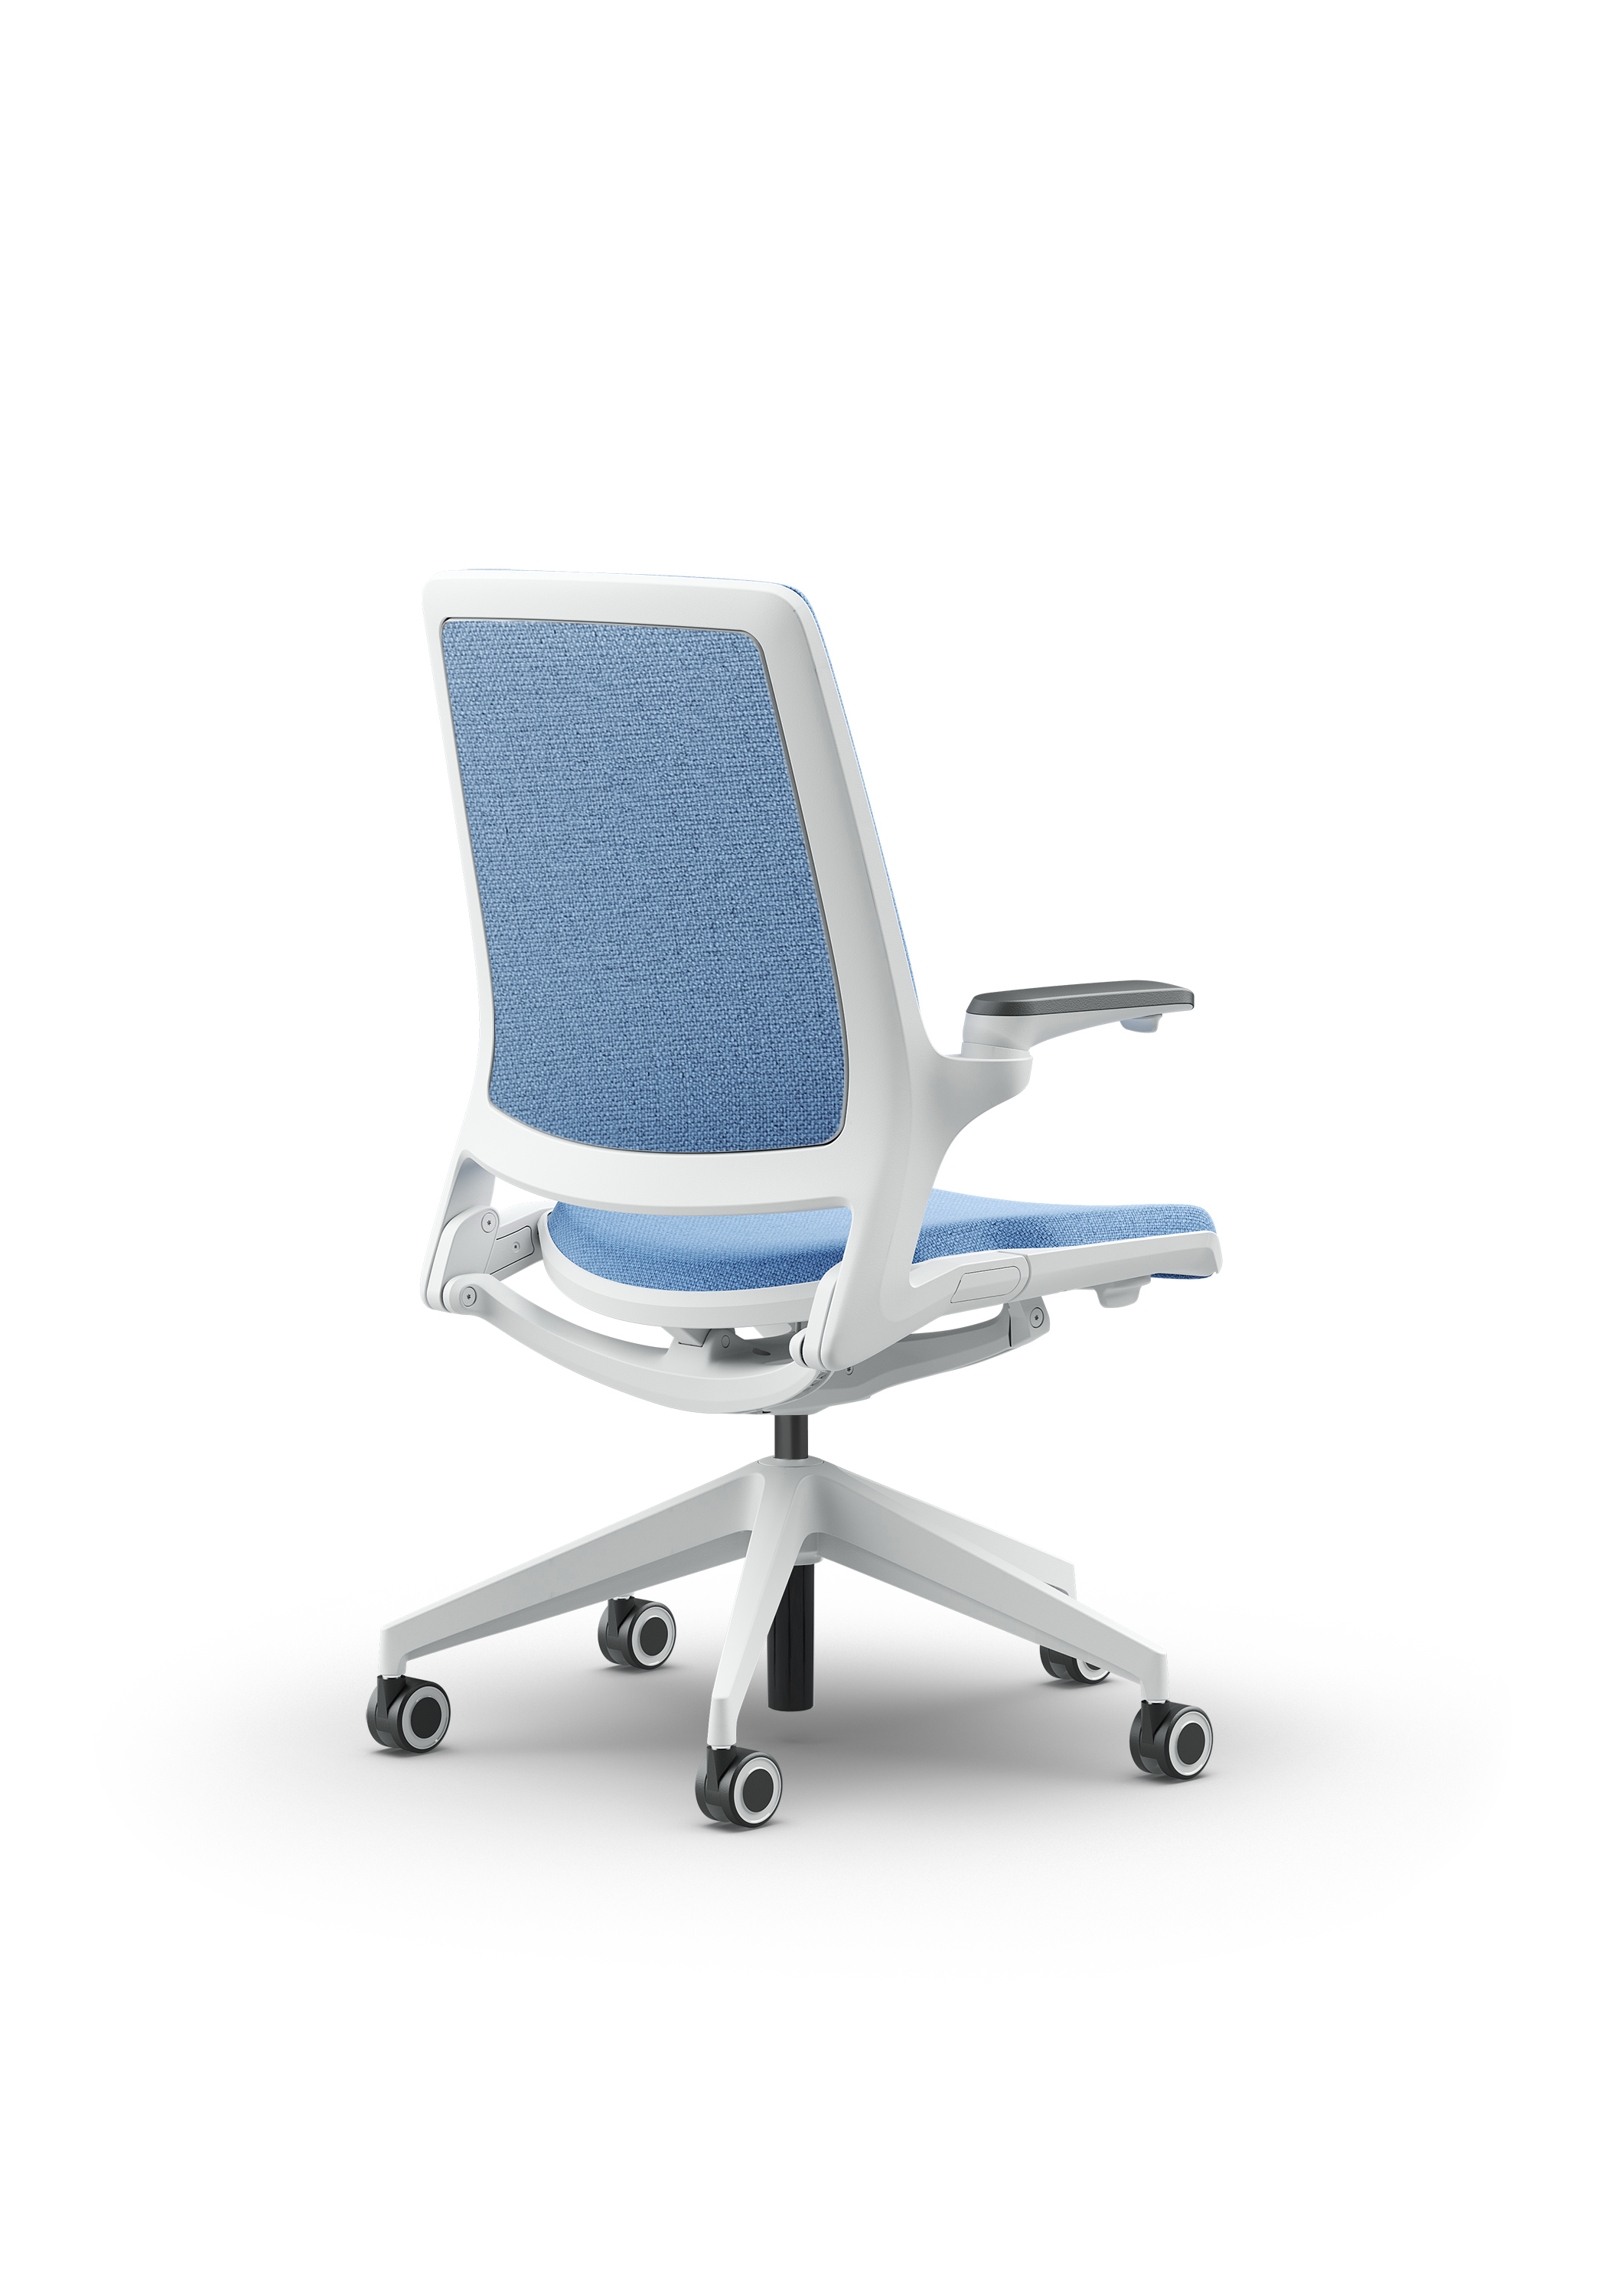 Biały fotel biurowy z niebieskim siedzeniem Ob smart - widoczny po skosie od tyłu zdjęcie 16